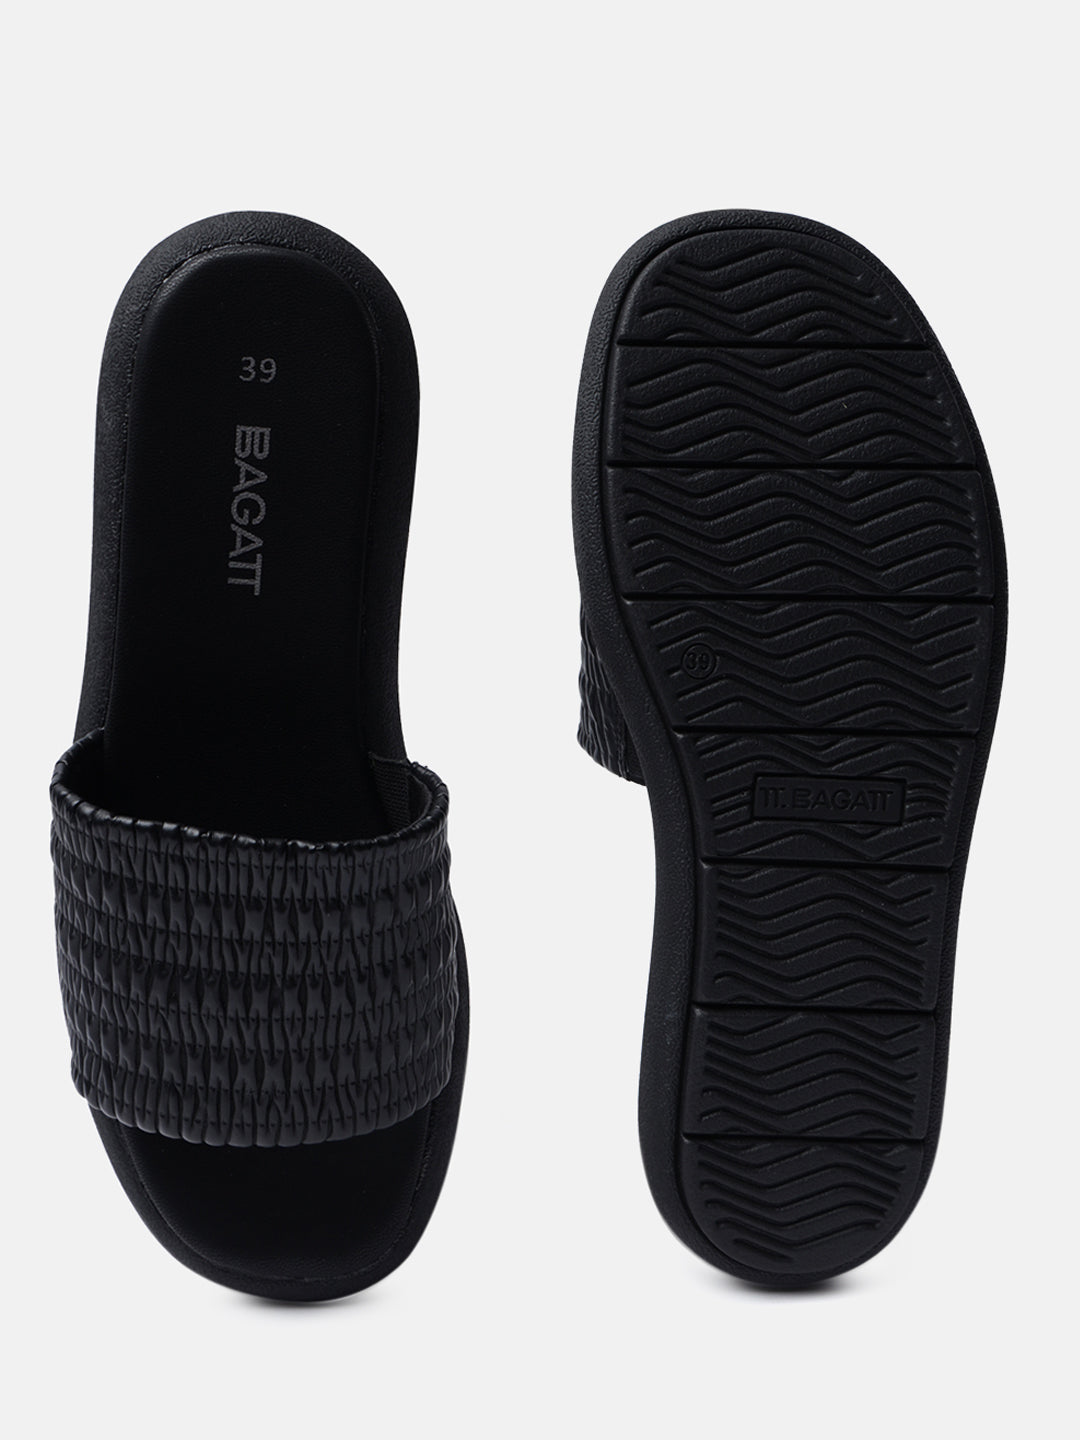 Jasmina Black Flatform Sandals